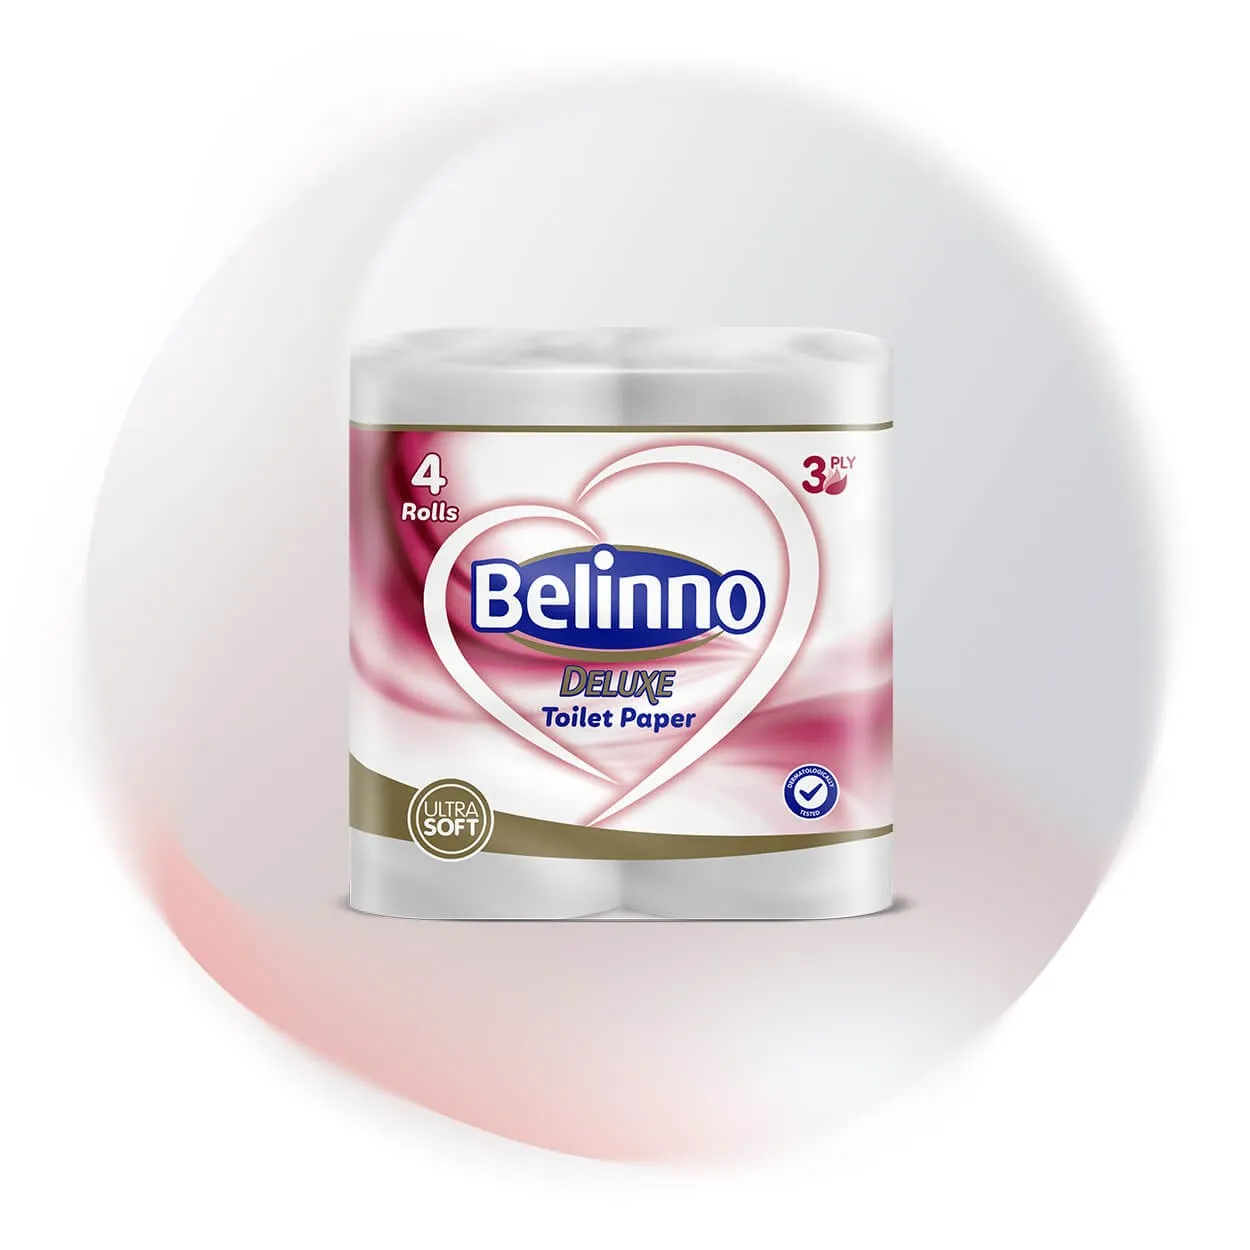 Belinno Deluxe 